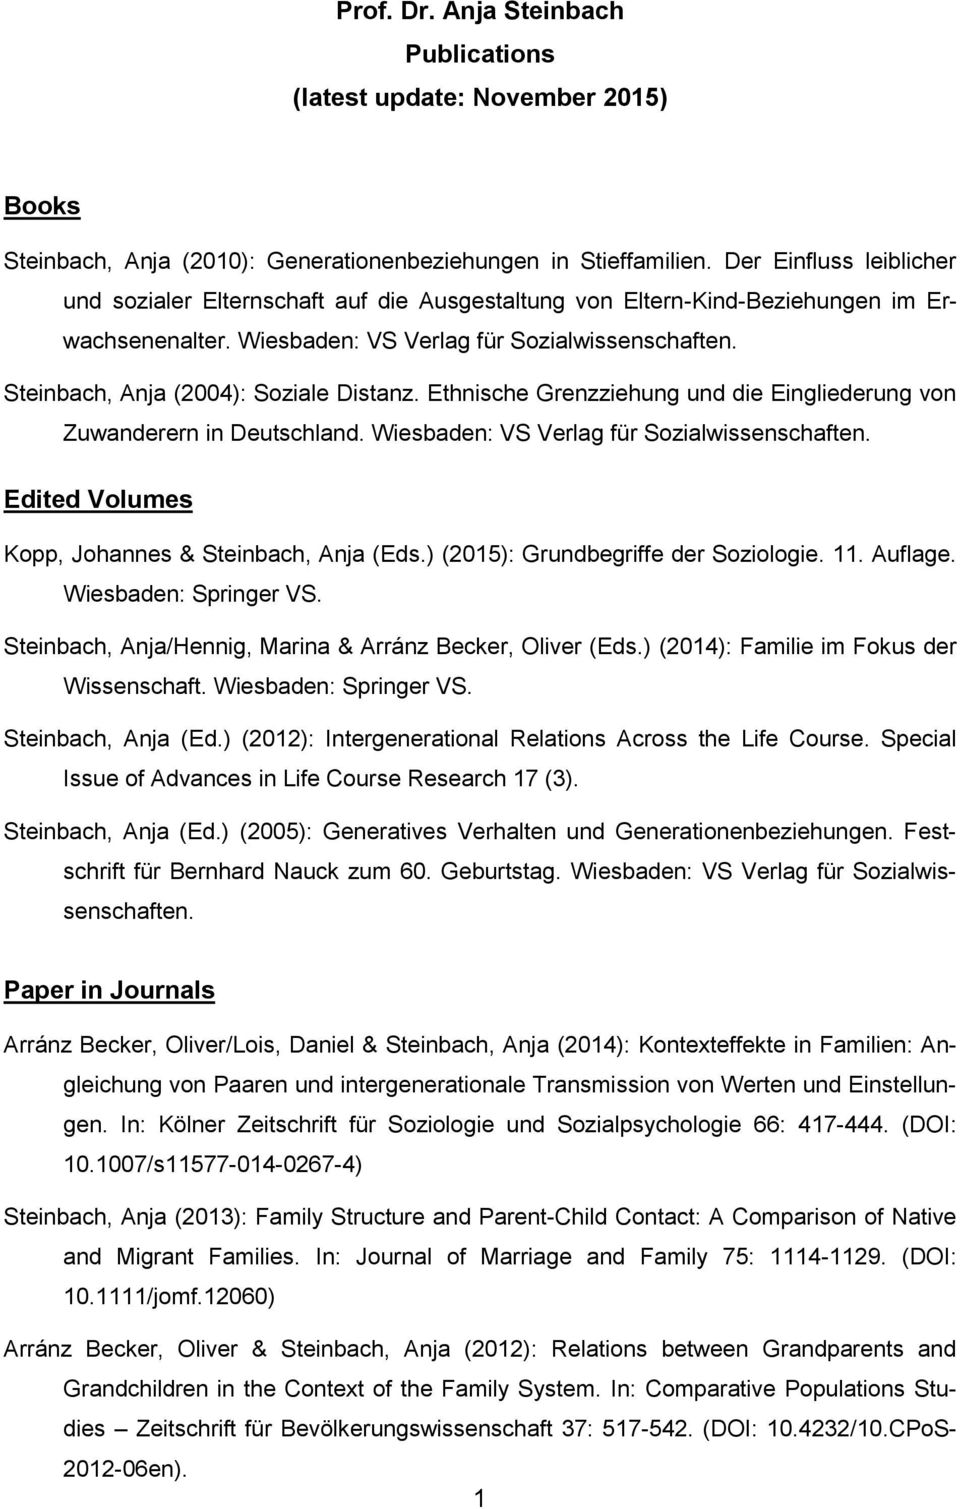 Steinbach, Anja (2004): Soziale Distanz. Ethnische Grenzziehung und die Eingliederung von Zuwanderern in Deutschland. Wiesbaden: VS Verlag für Sozialwissenschaften.